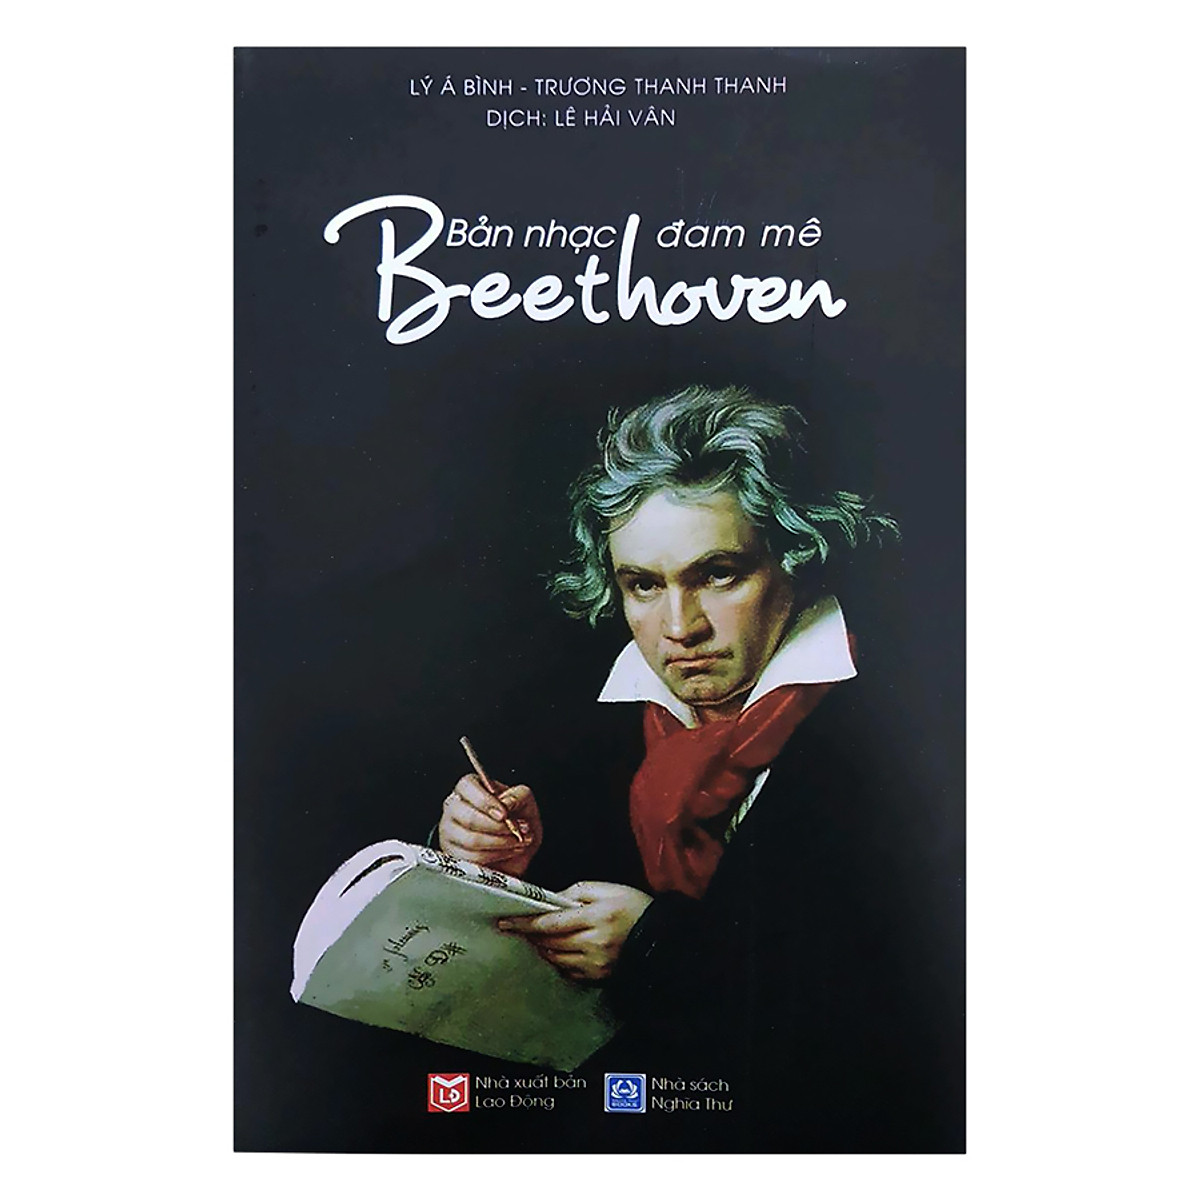 Beethoven - Bản Nhạc Đam Mê